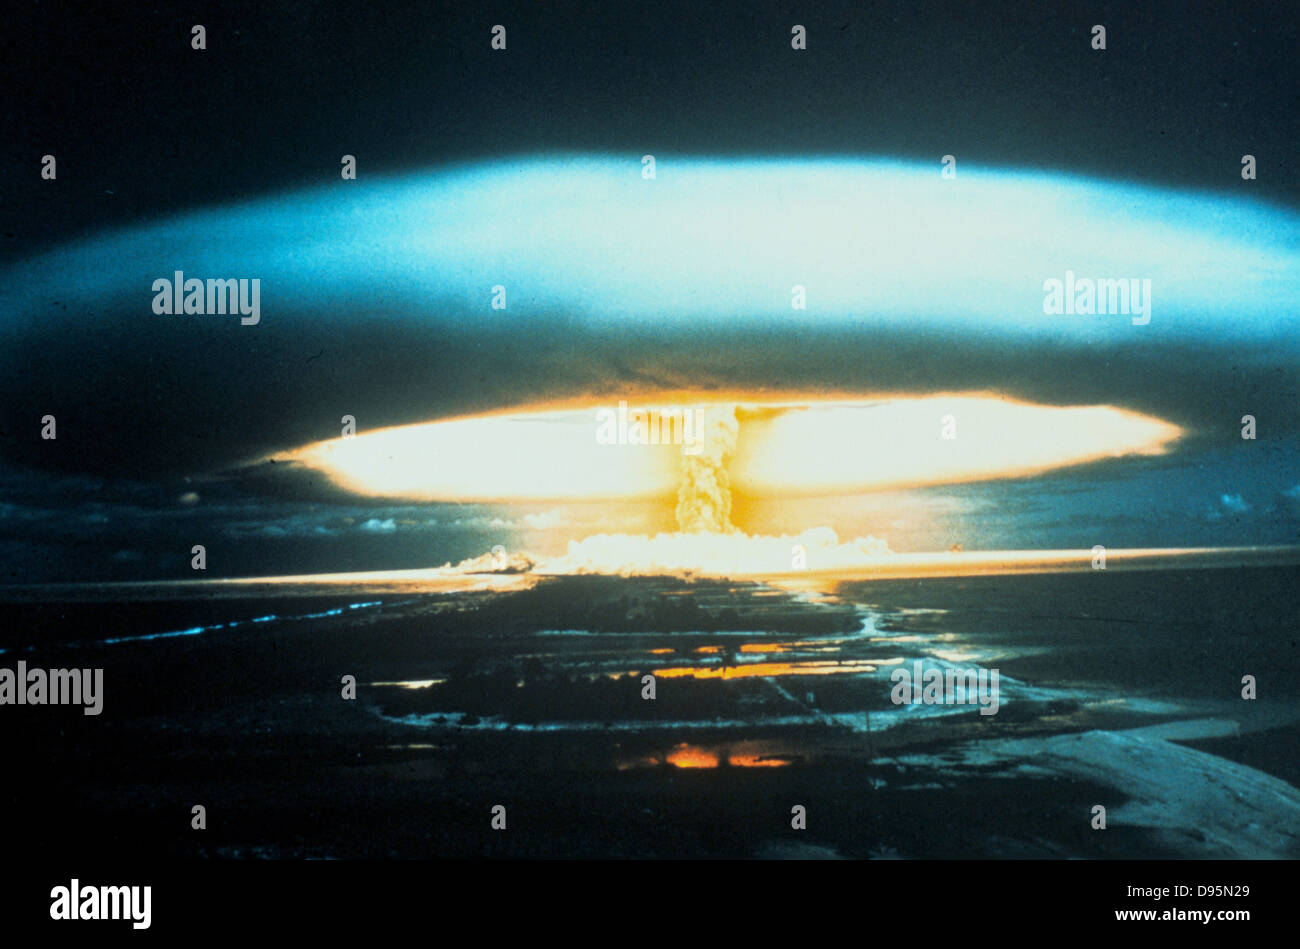 150 - megaton thermonuklearen Explosion, Bikini Atoll, l März 1854. Unerwarteten Ausbreitung von Fallout führte zu Bewusstsein und Erforschung, radioaktive Verschmutzung. UNO-Foto. Stockfoto